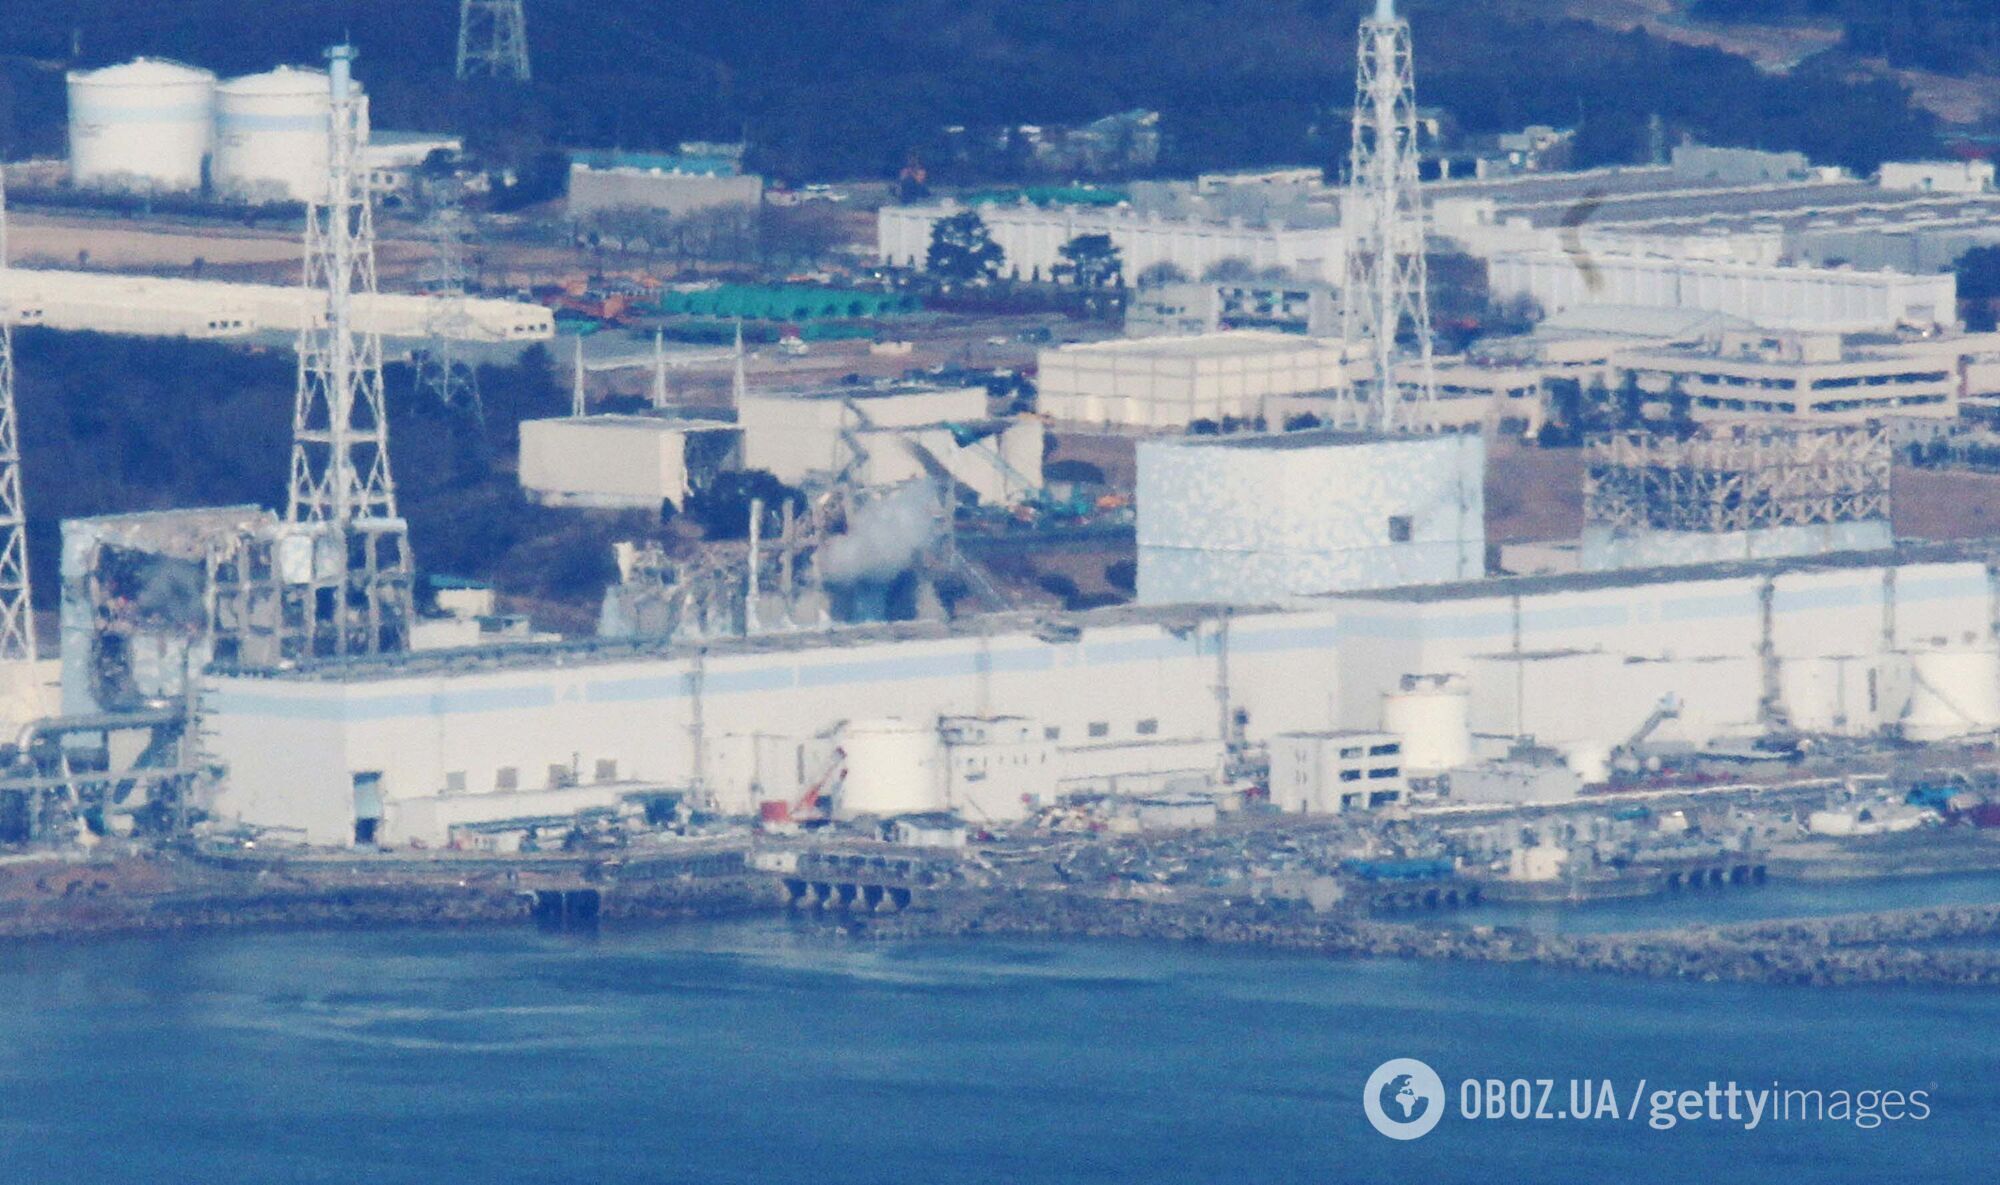 АЭС "Фукусима" 17 марта 2011 года (снимок с вертолета)